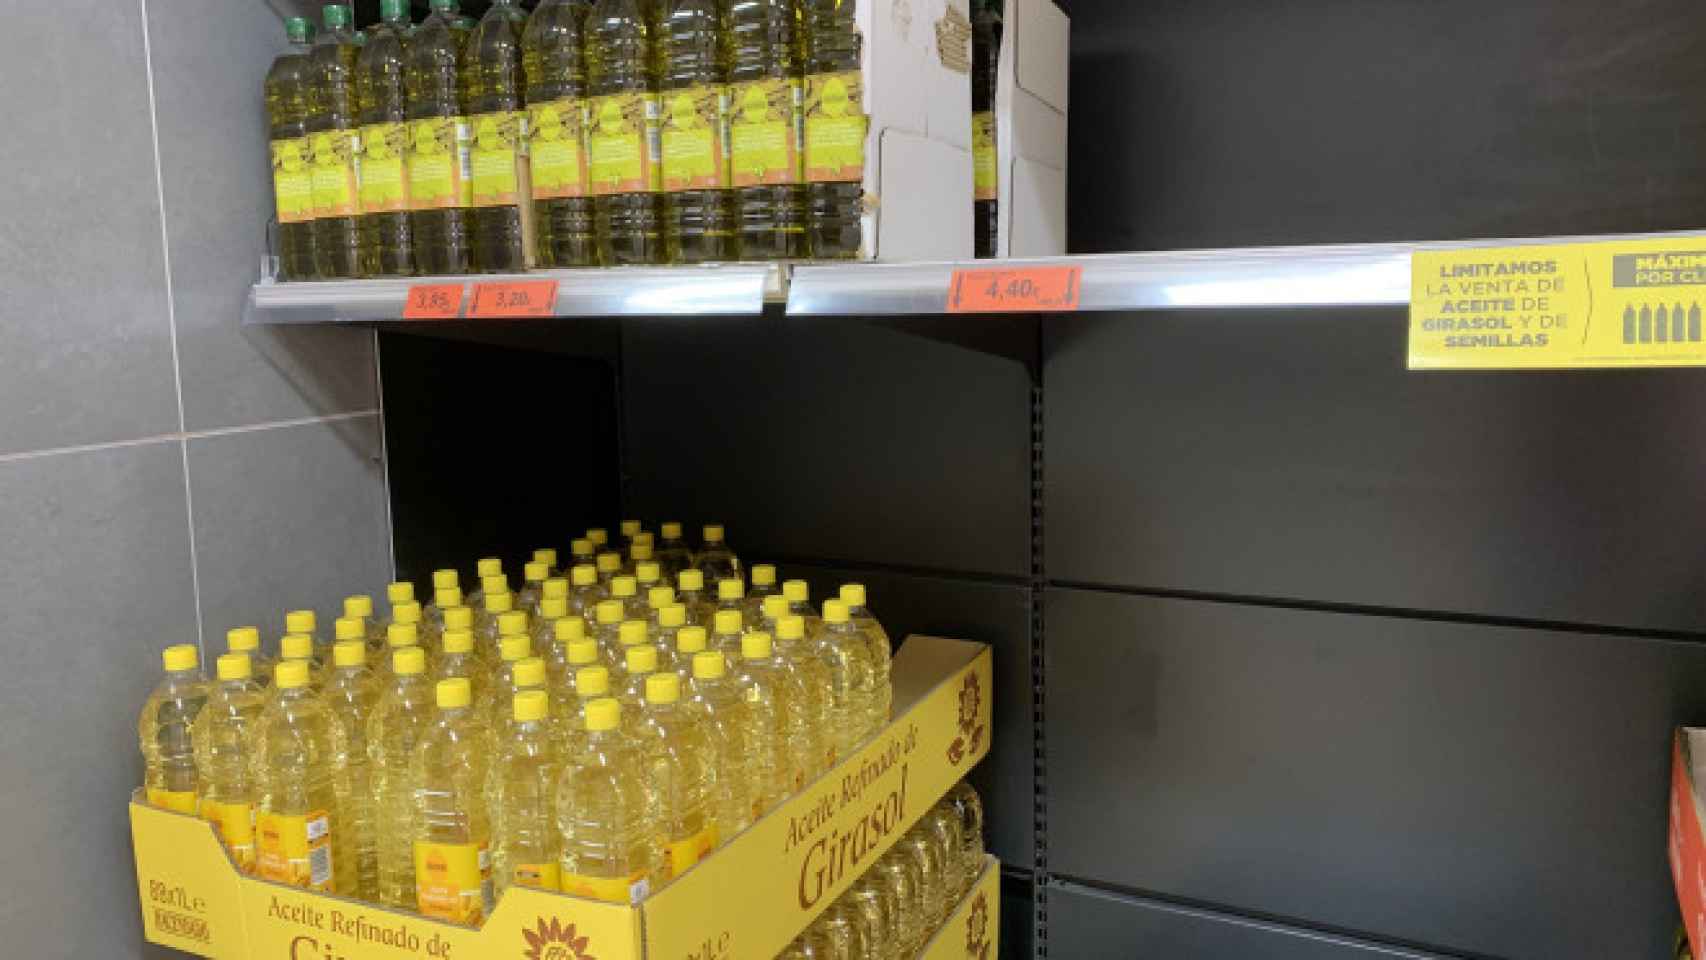 El aceite de girasol ha incrementado sus ventas ante la gran subida en el precio del aceite de oliva.